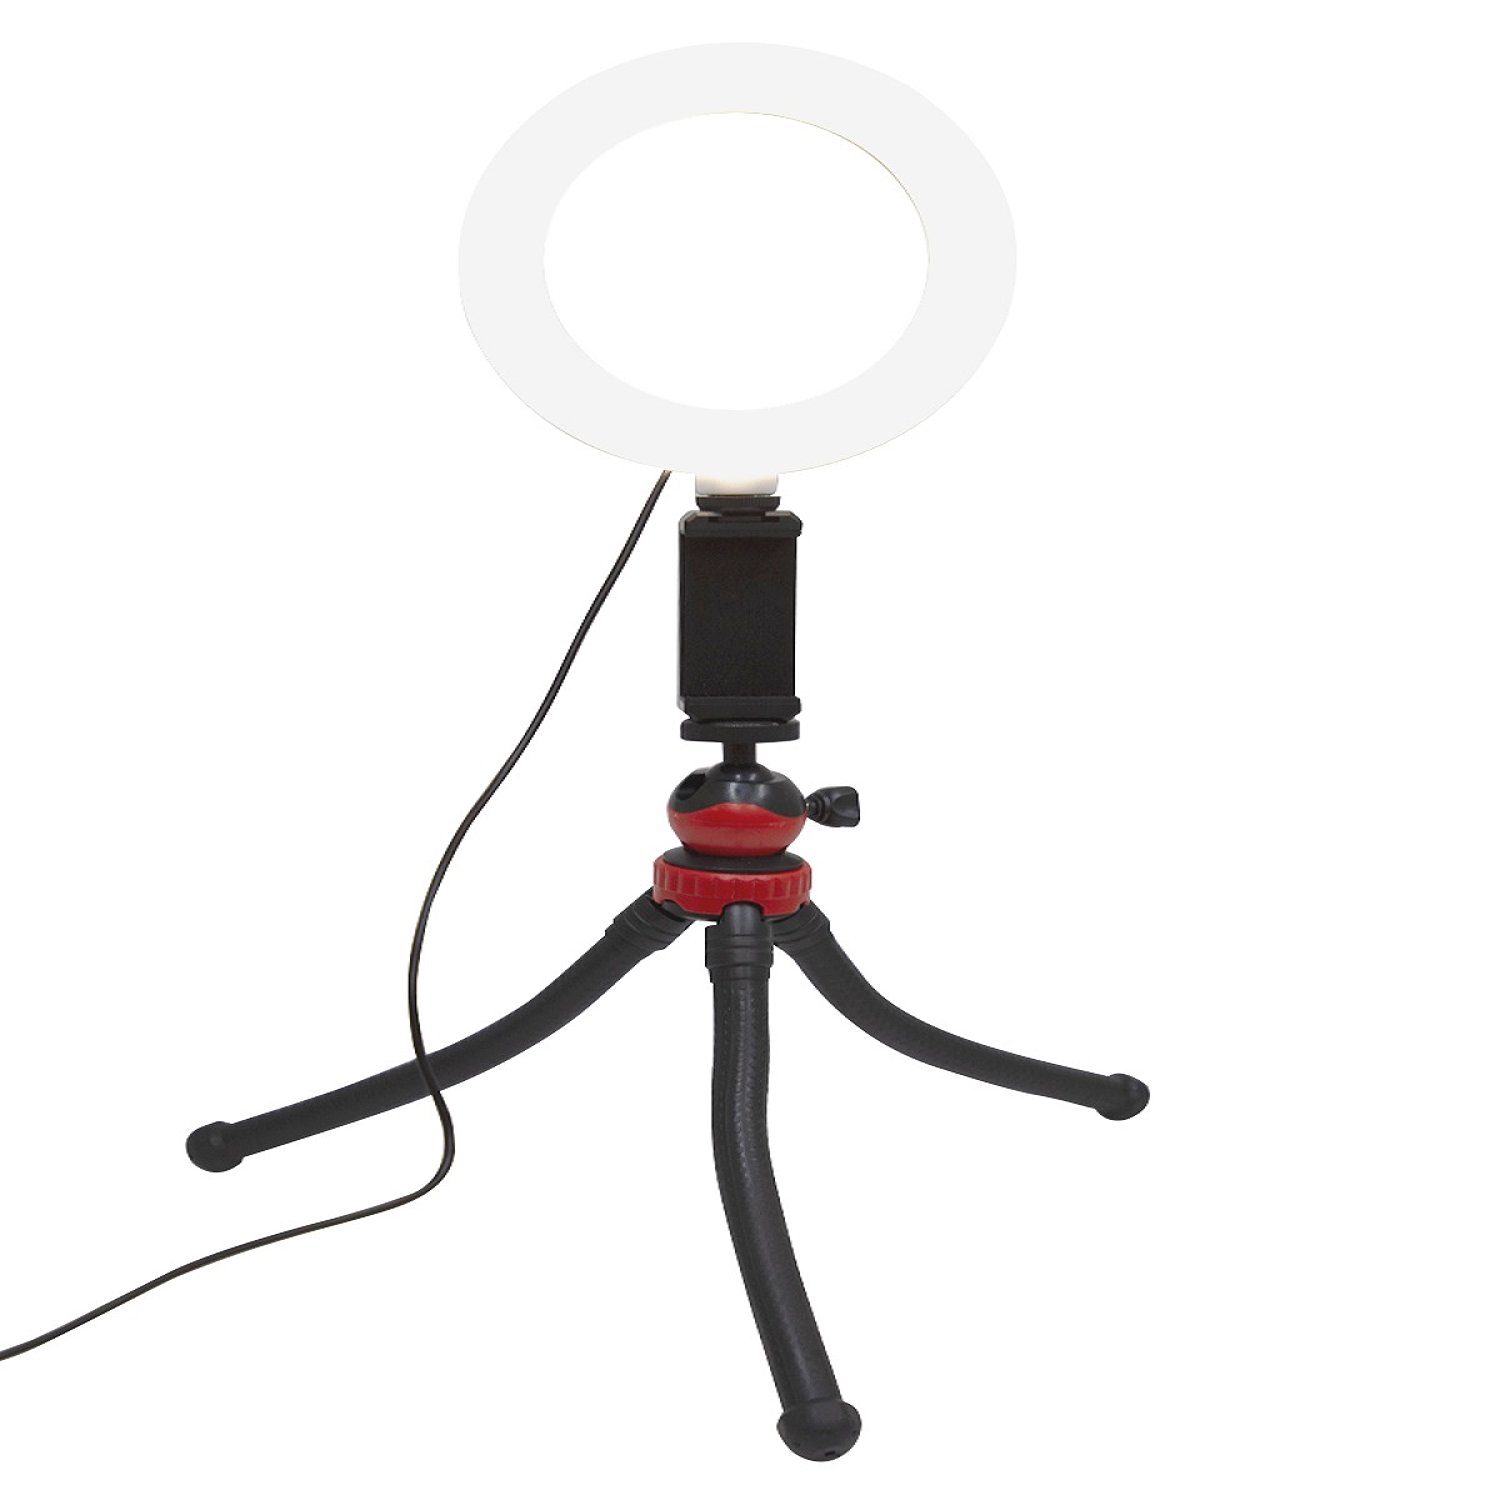 Трипод-осьминог mb mobility MRL-6 с LED светильником, черный трипод для телефона mobility с гибким штативом осьминог красный